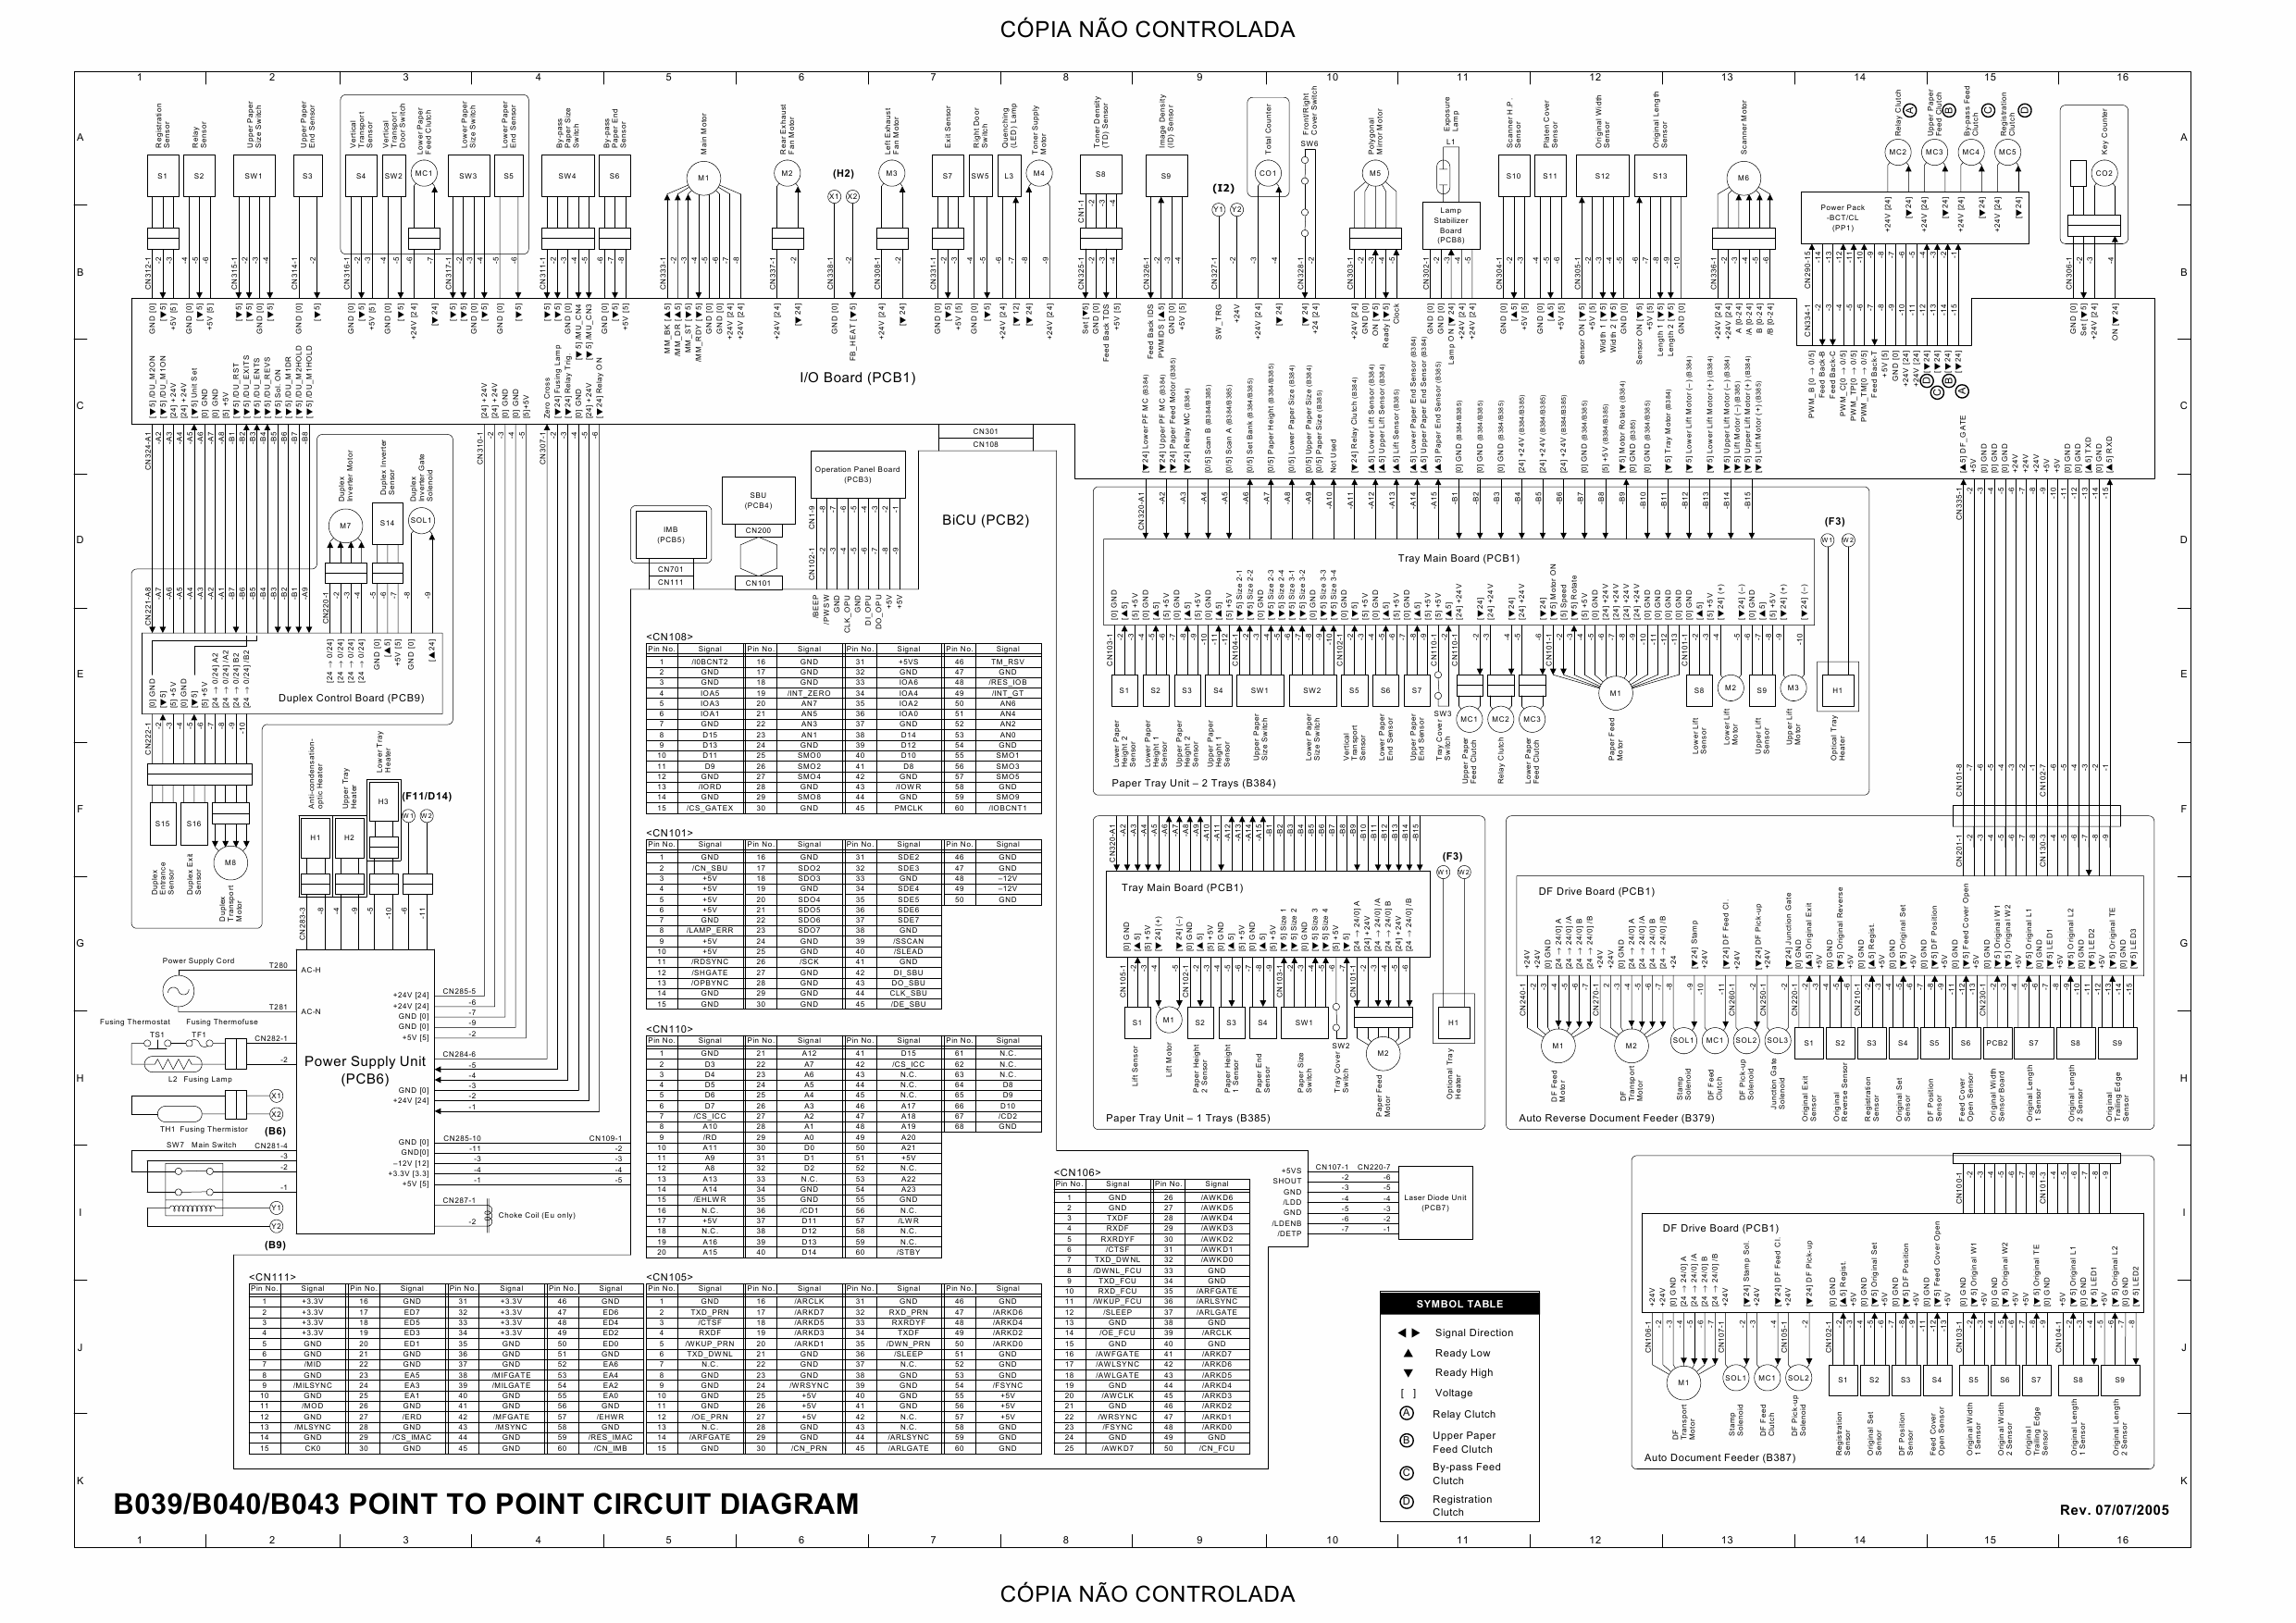 RICOH Aficio 1113 B120 Circuit Diagram-1